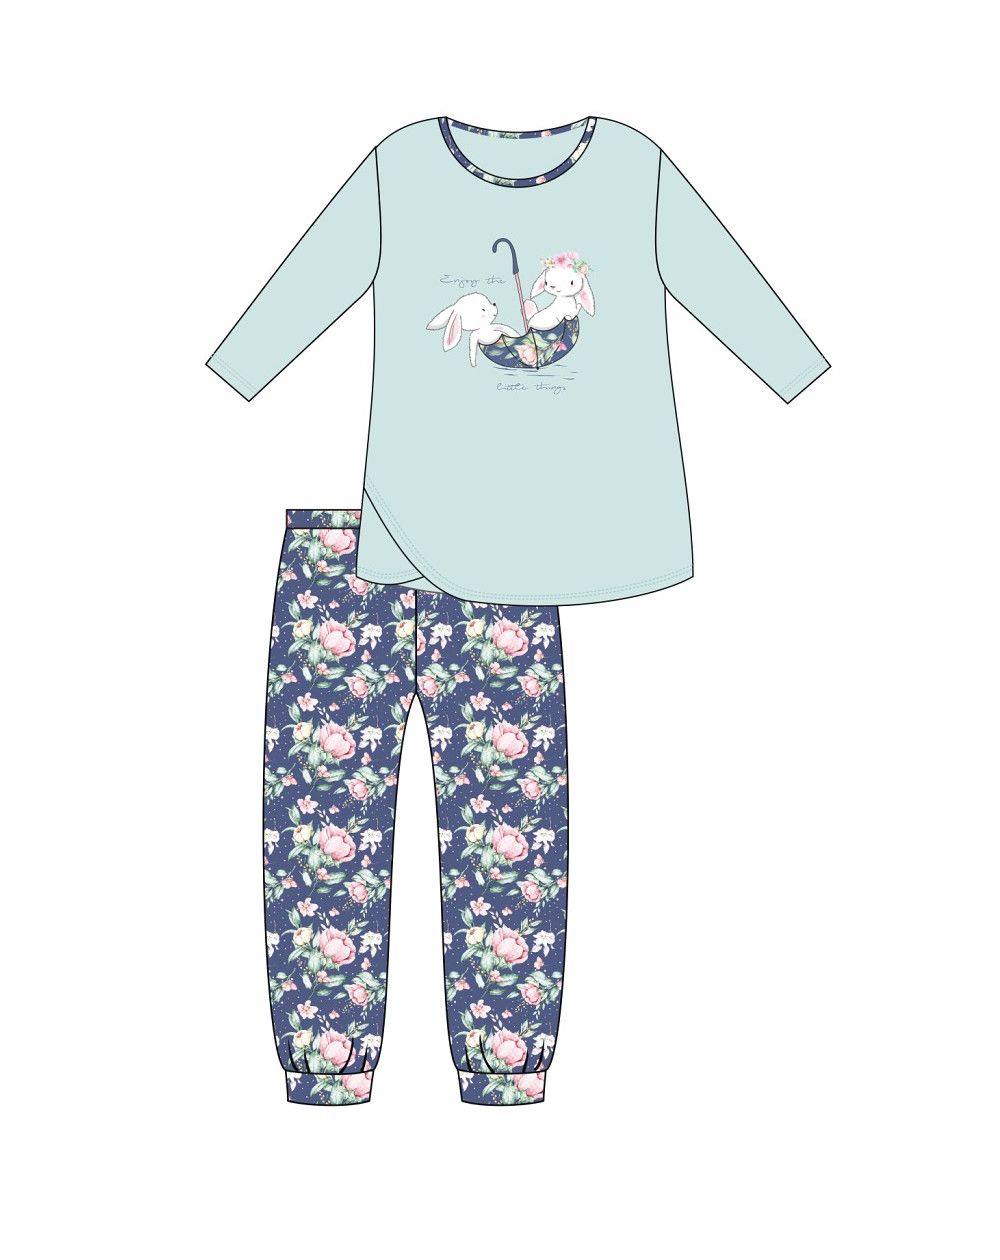 Piżama Cornette Young Girl 031/140 Umbrella dł/r 134-164